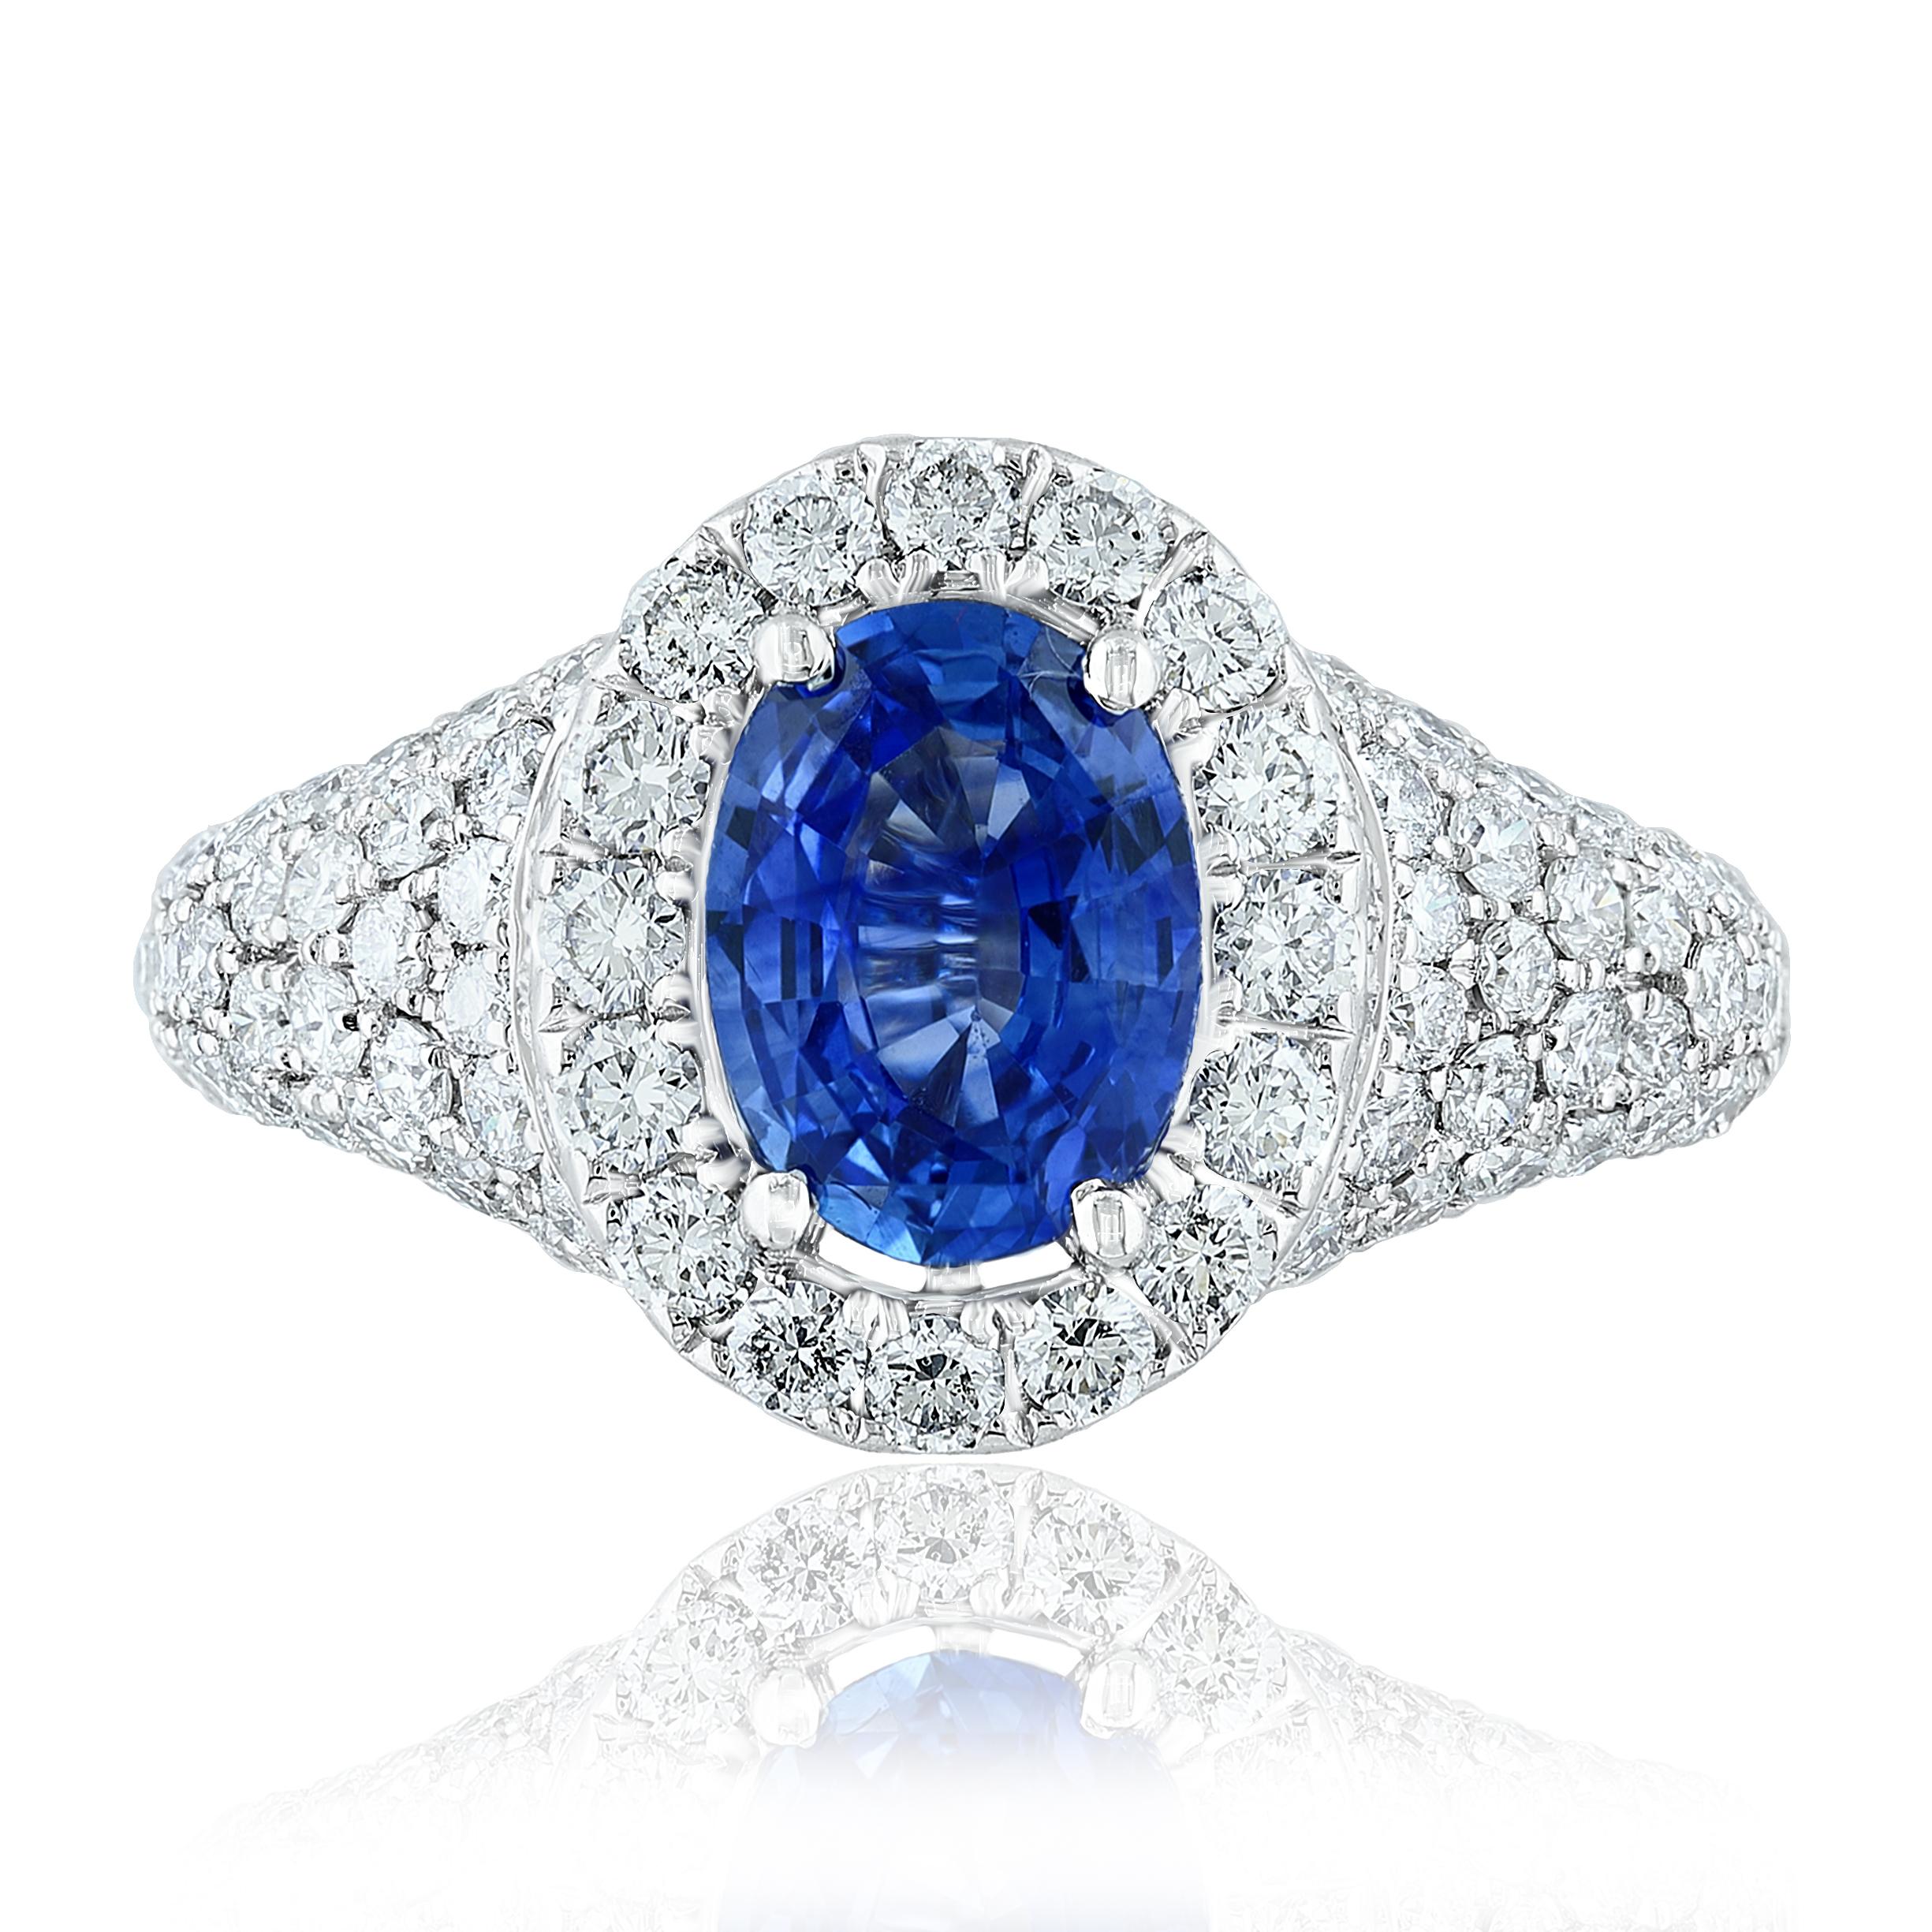 Ein einzigartig gestalteter Ring mit einem blauen Saphir im Ovalschliff von 1,27 Karat. Um den Mittelstein herum sind runde Diamanten im Brillantschliff in einer Fassung aus 18 Karat Weißgold angeordnet. Die 112 Diamanten wiegen insgesamt 1,63 Karat.